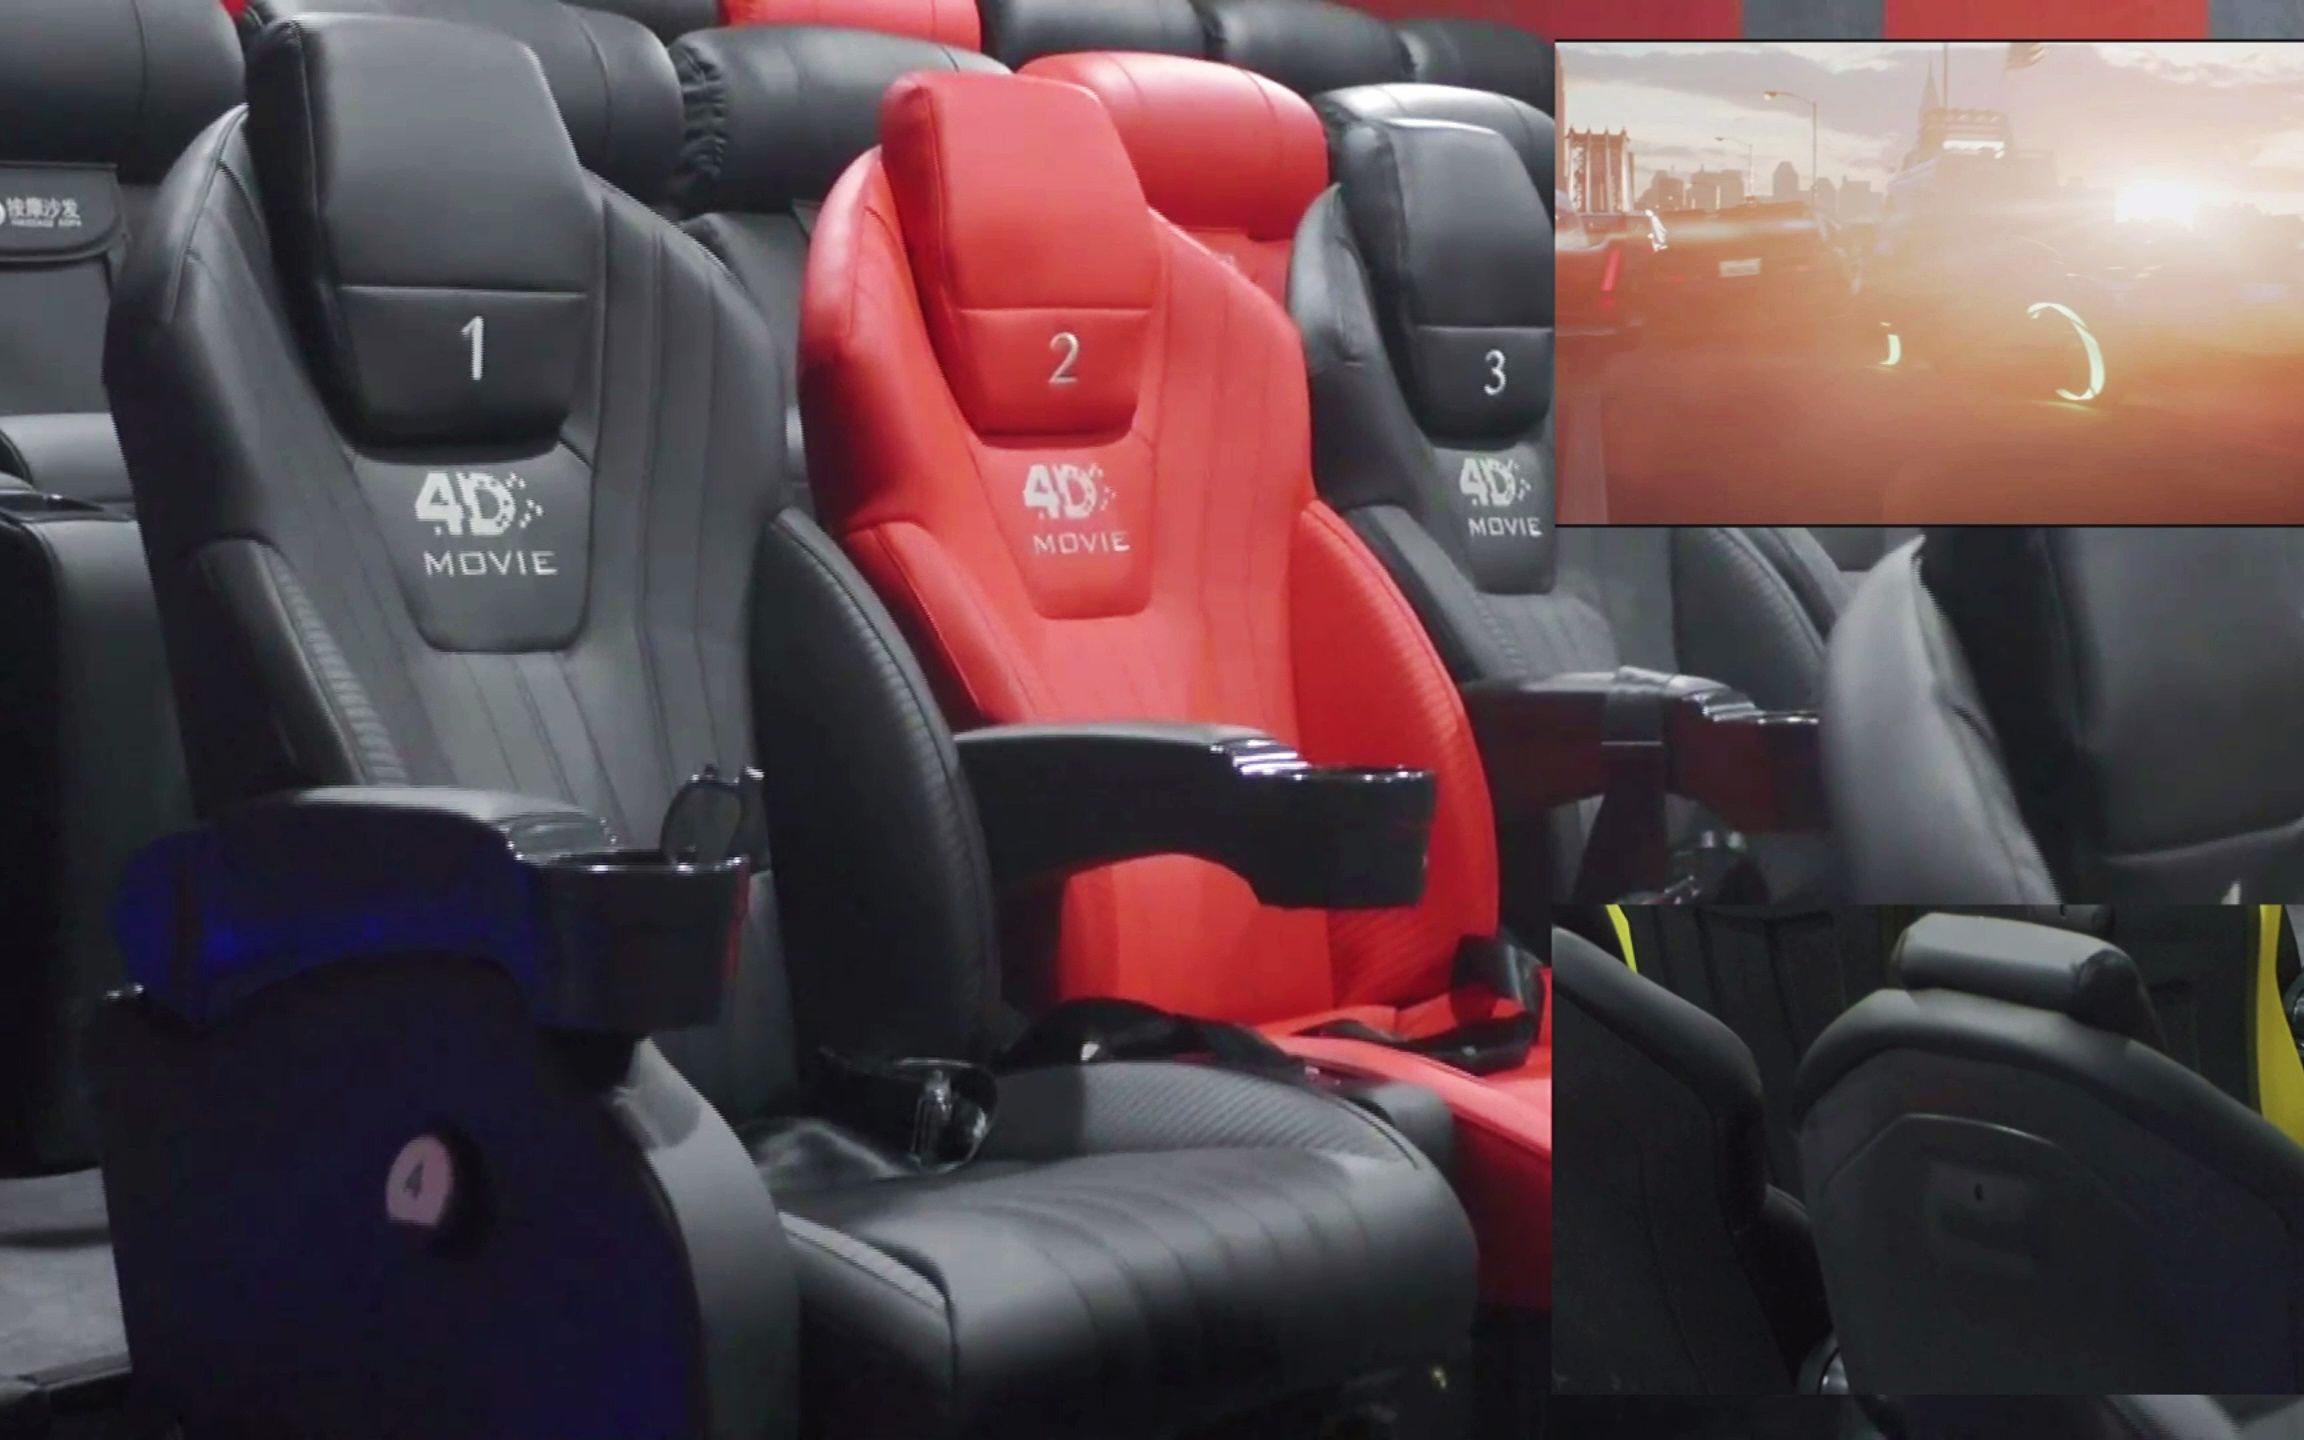 4D5D动感影院座椅与电影影片同步效果展示科普视频